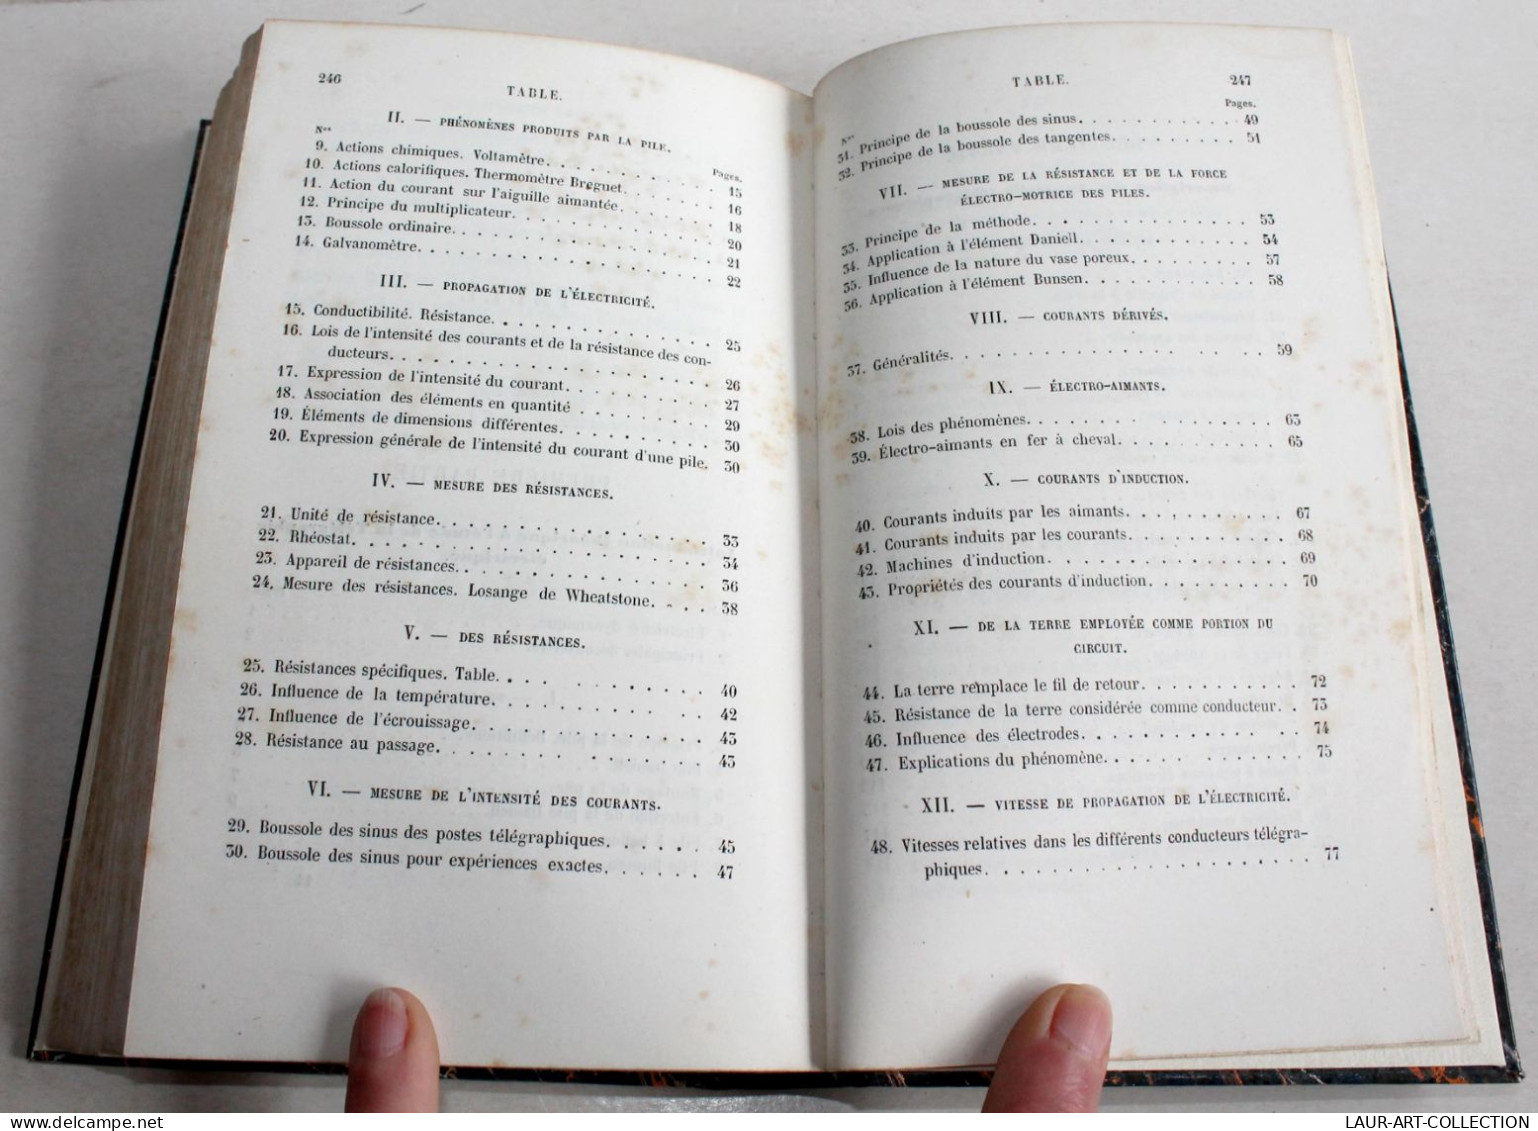 MANUEL DE TELEGRAPHE ELECTRIQUE de BREGUET 4e EDITION + 80 GRAVURE 1862 HACHETTE / ANCIEN LIVRE XIXe SIECLE (2204.30)